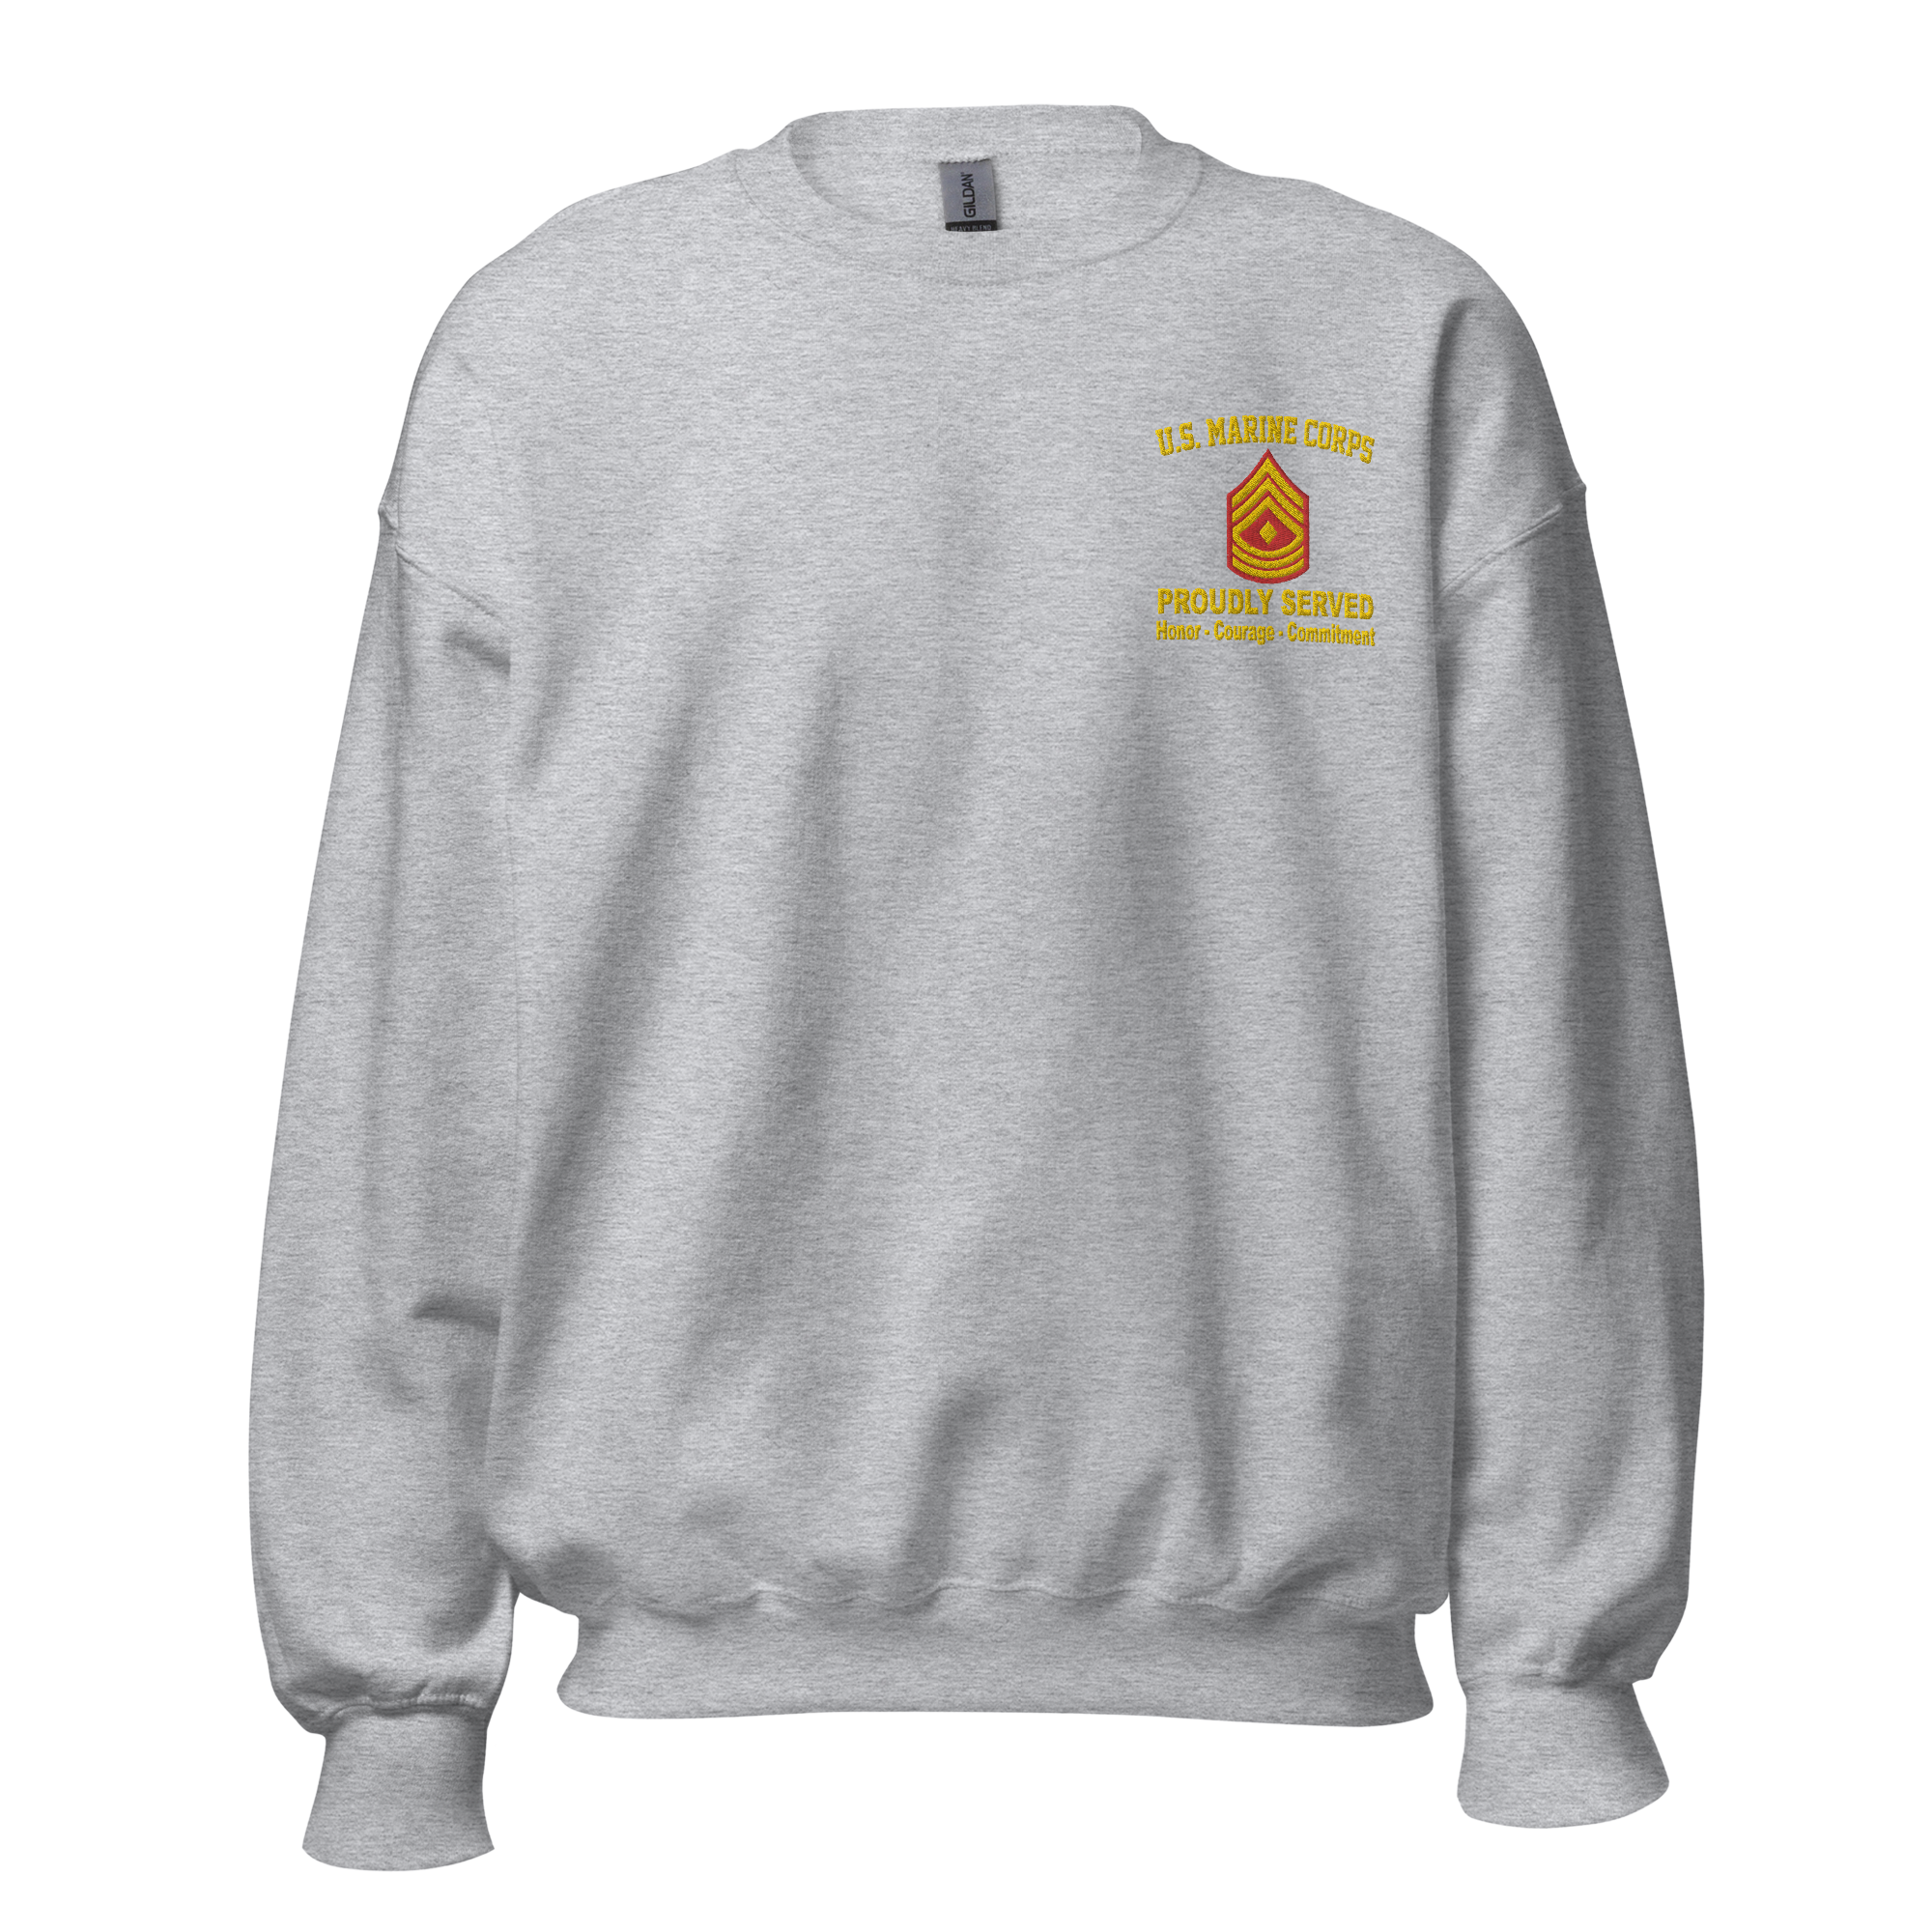 Custom US Marine Corps Ranks, Insignia Core Values Embroidered Unisex Sweatshirt